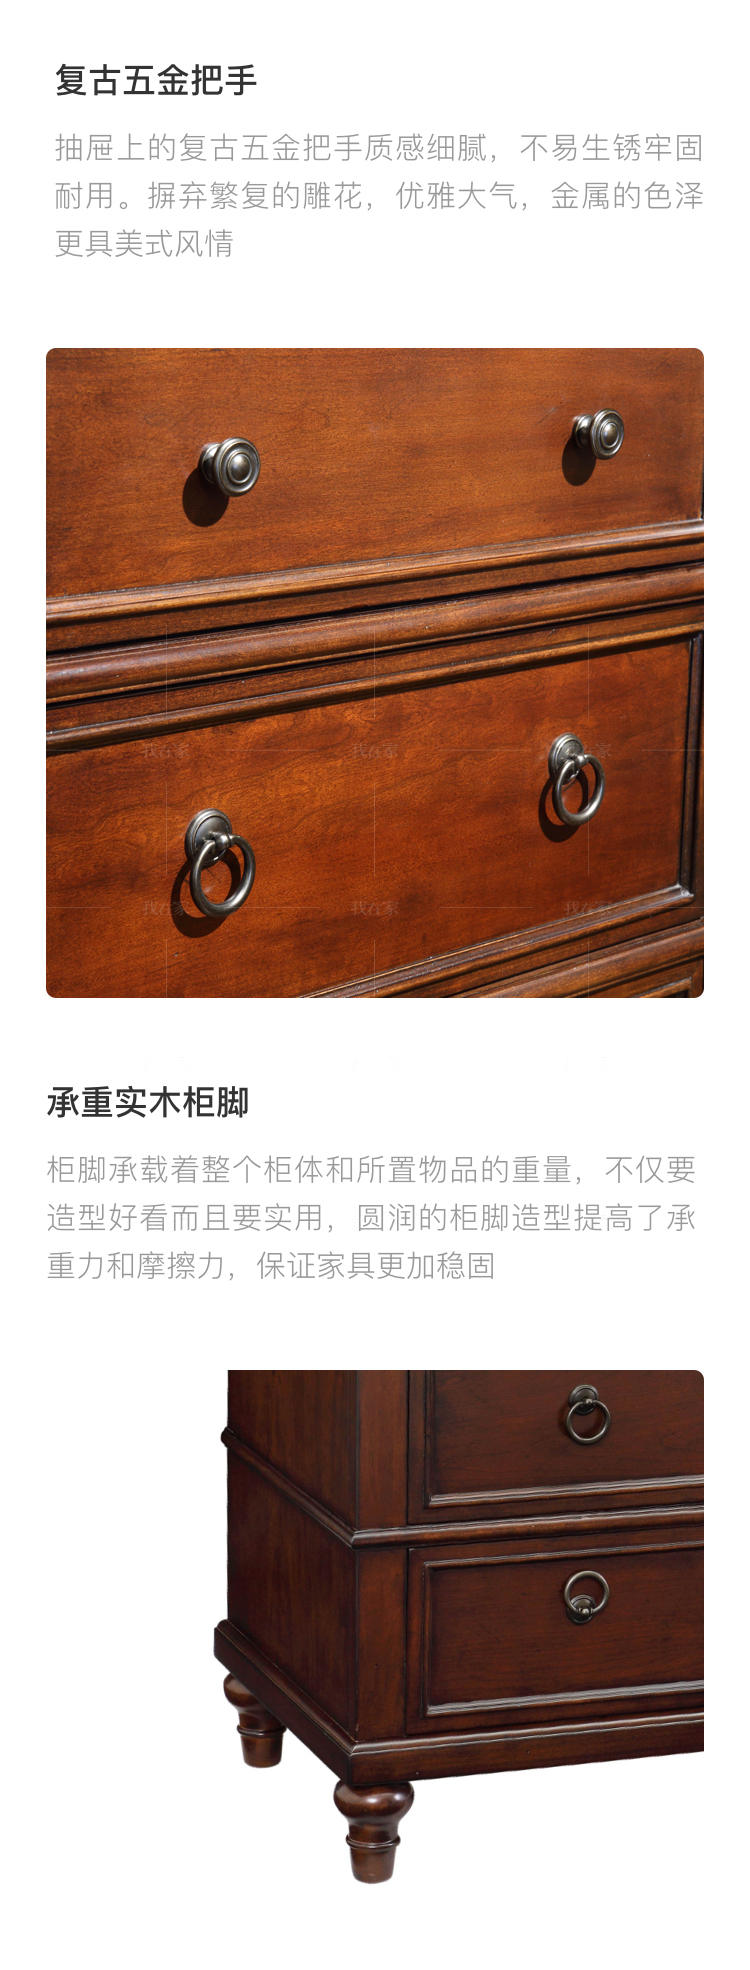 传统美式风格路易斯安娜九斗矮柜的家具详细介绍